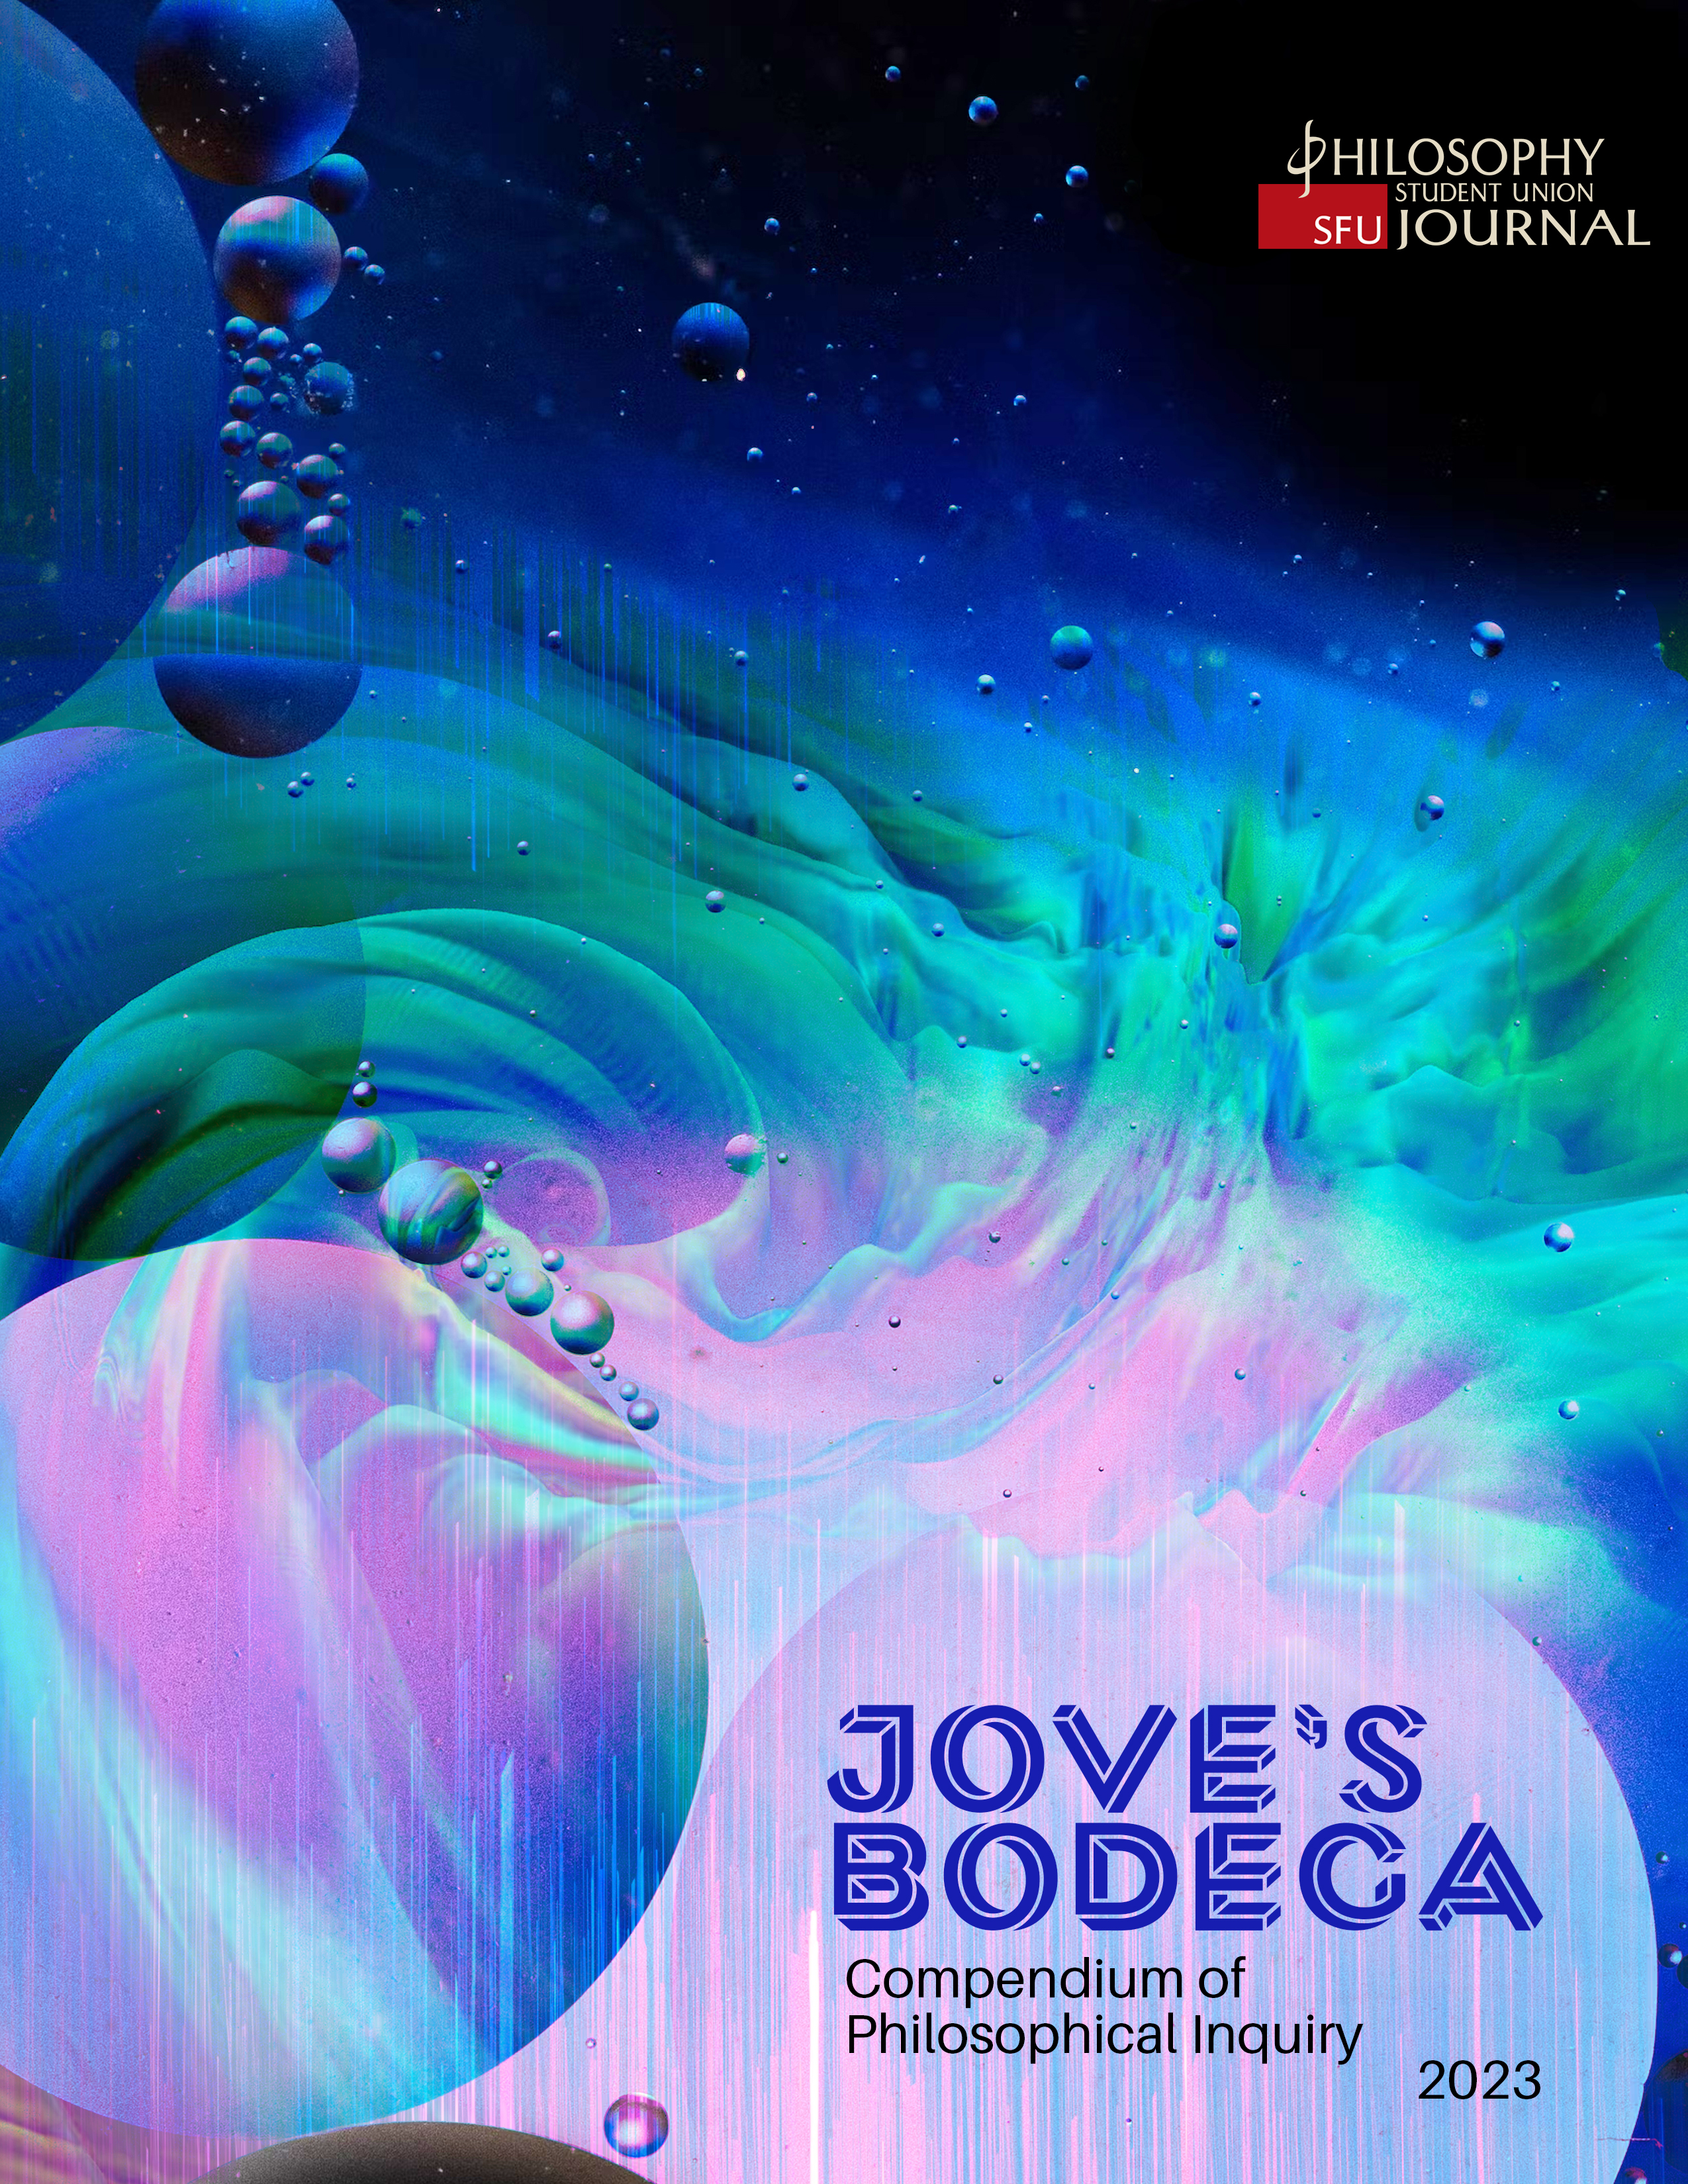 Cover Image of Jove's Bodega 2023 Compendium of Philosophical Inquiry